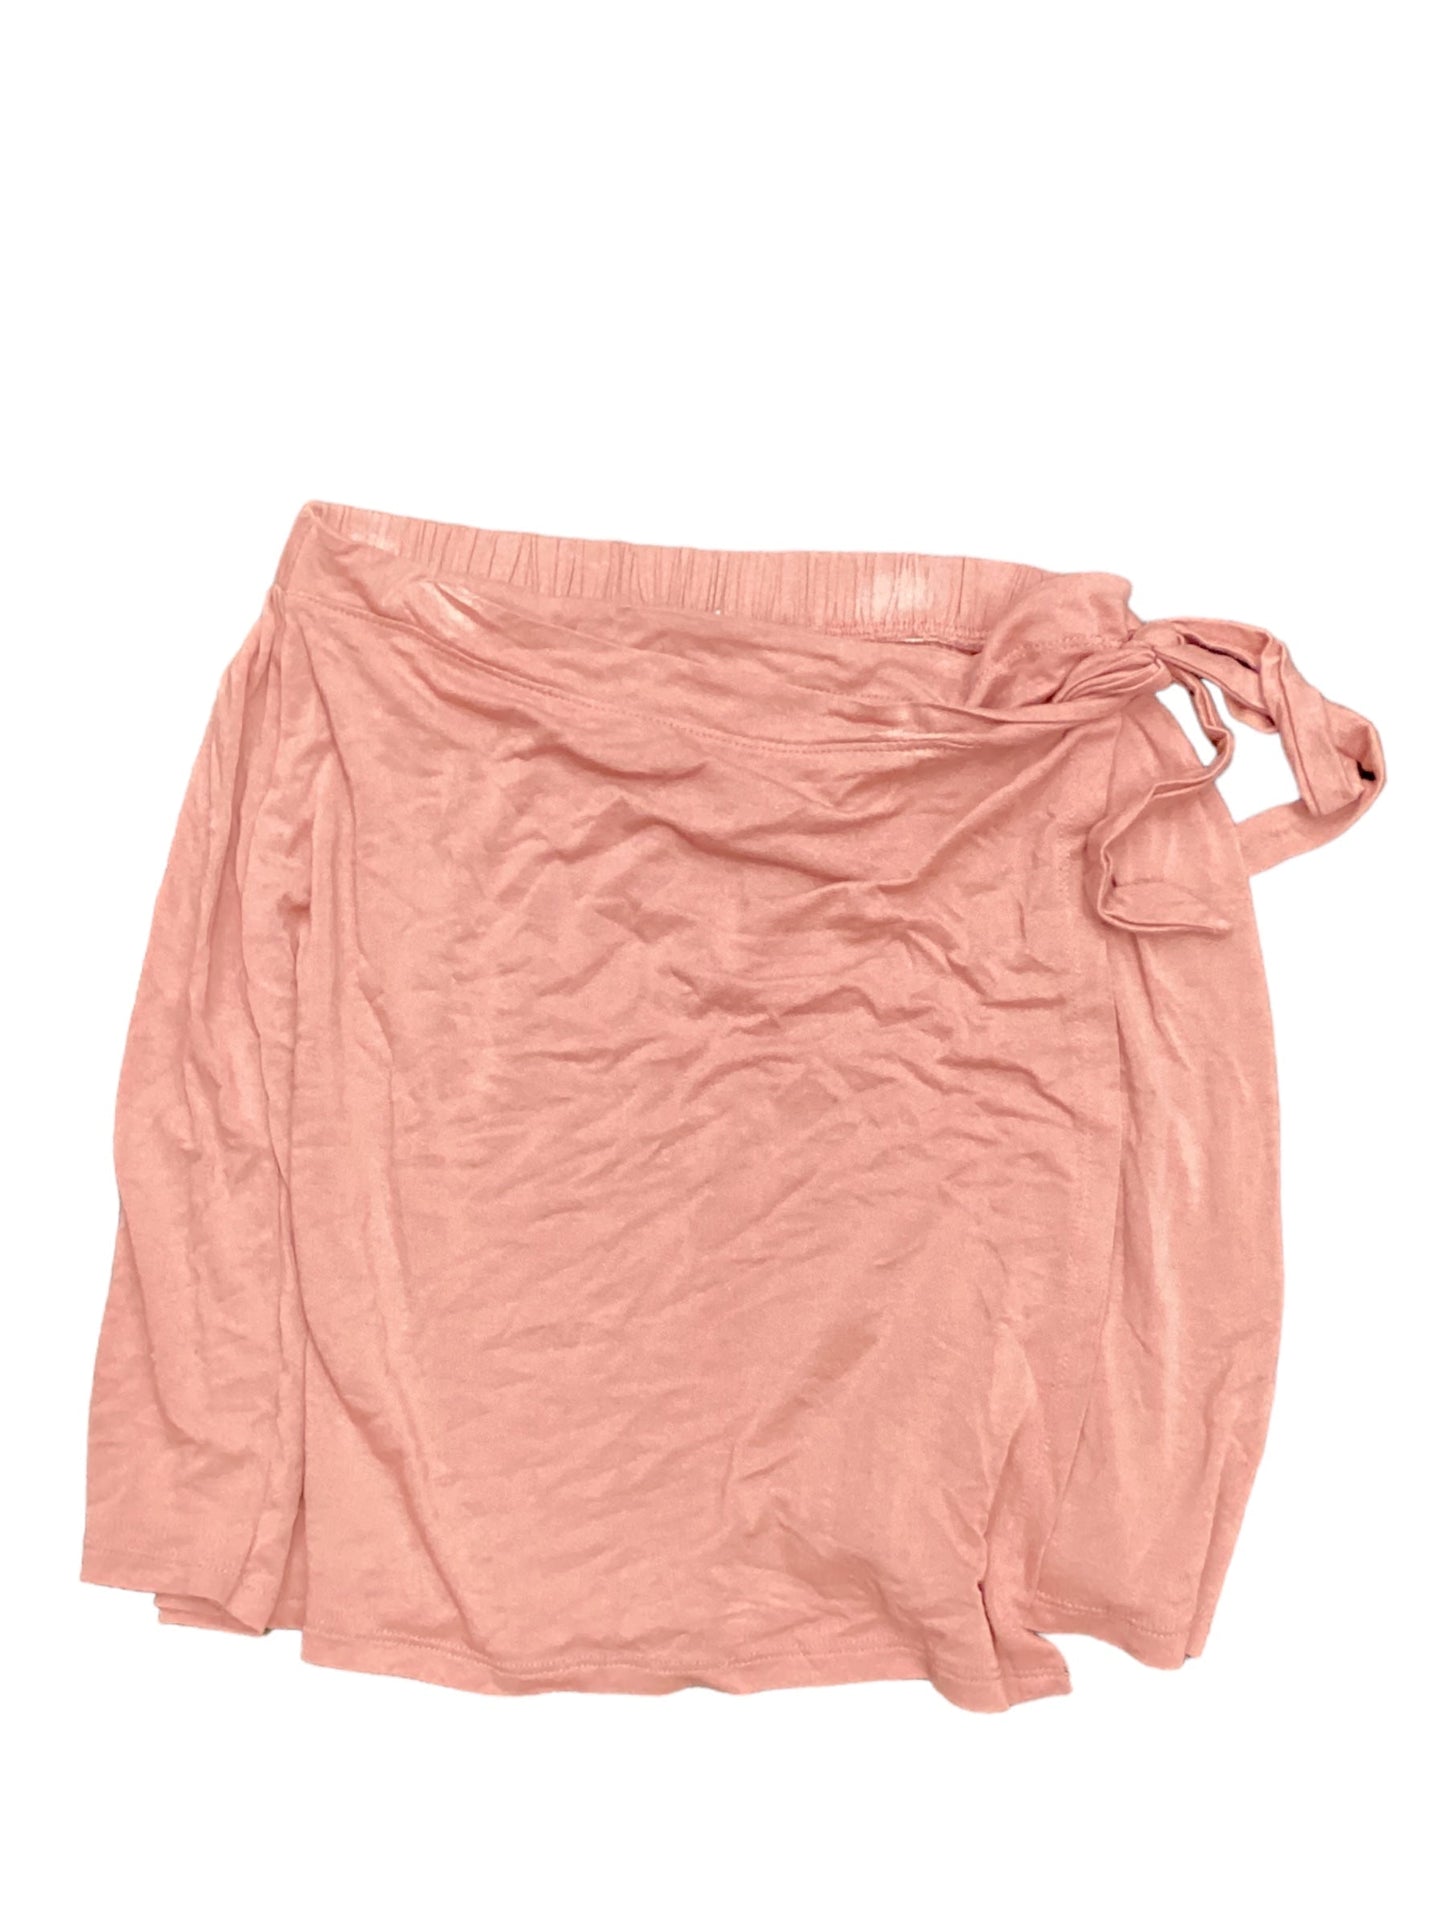 Orange Skirt Midi Z Supply, Size M